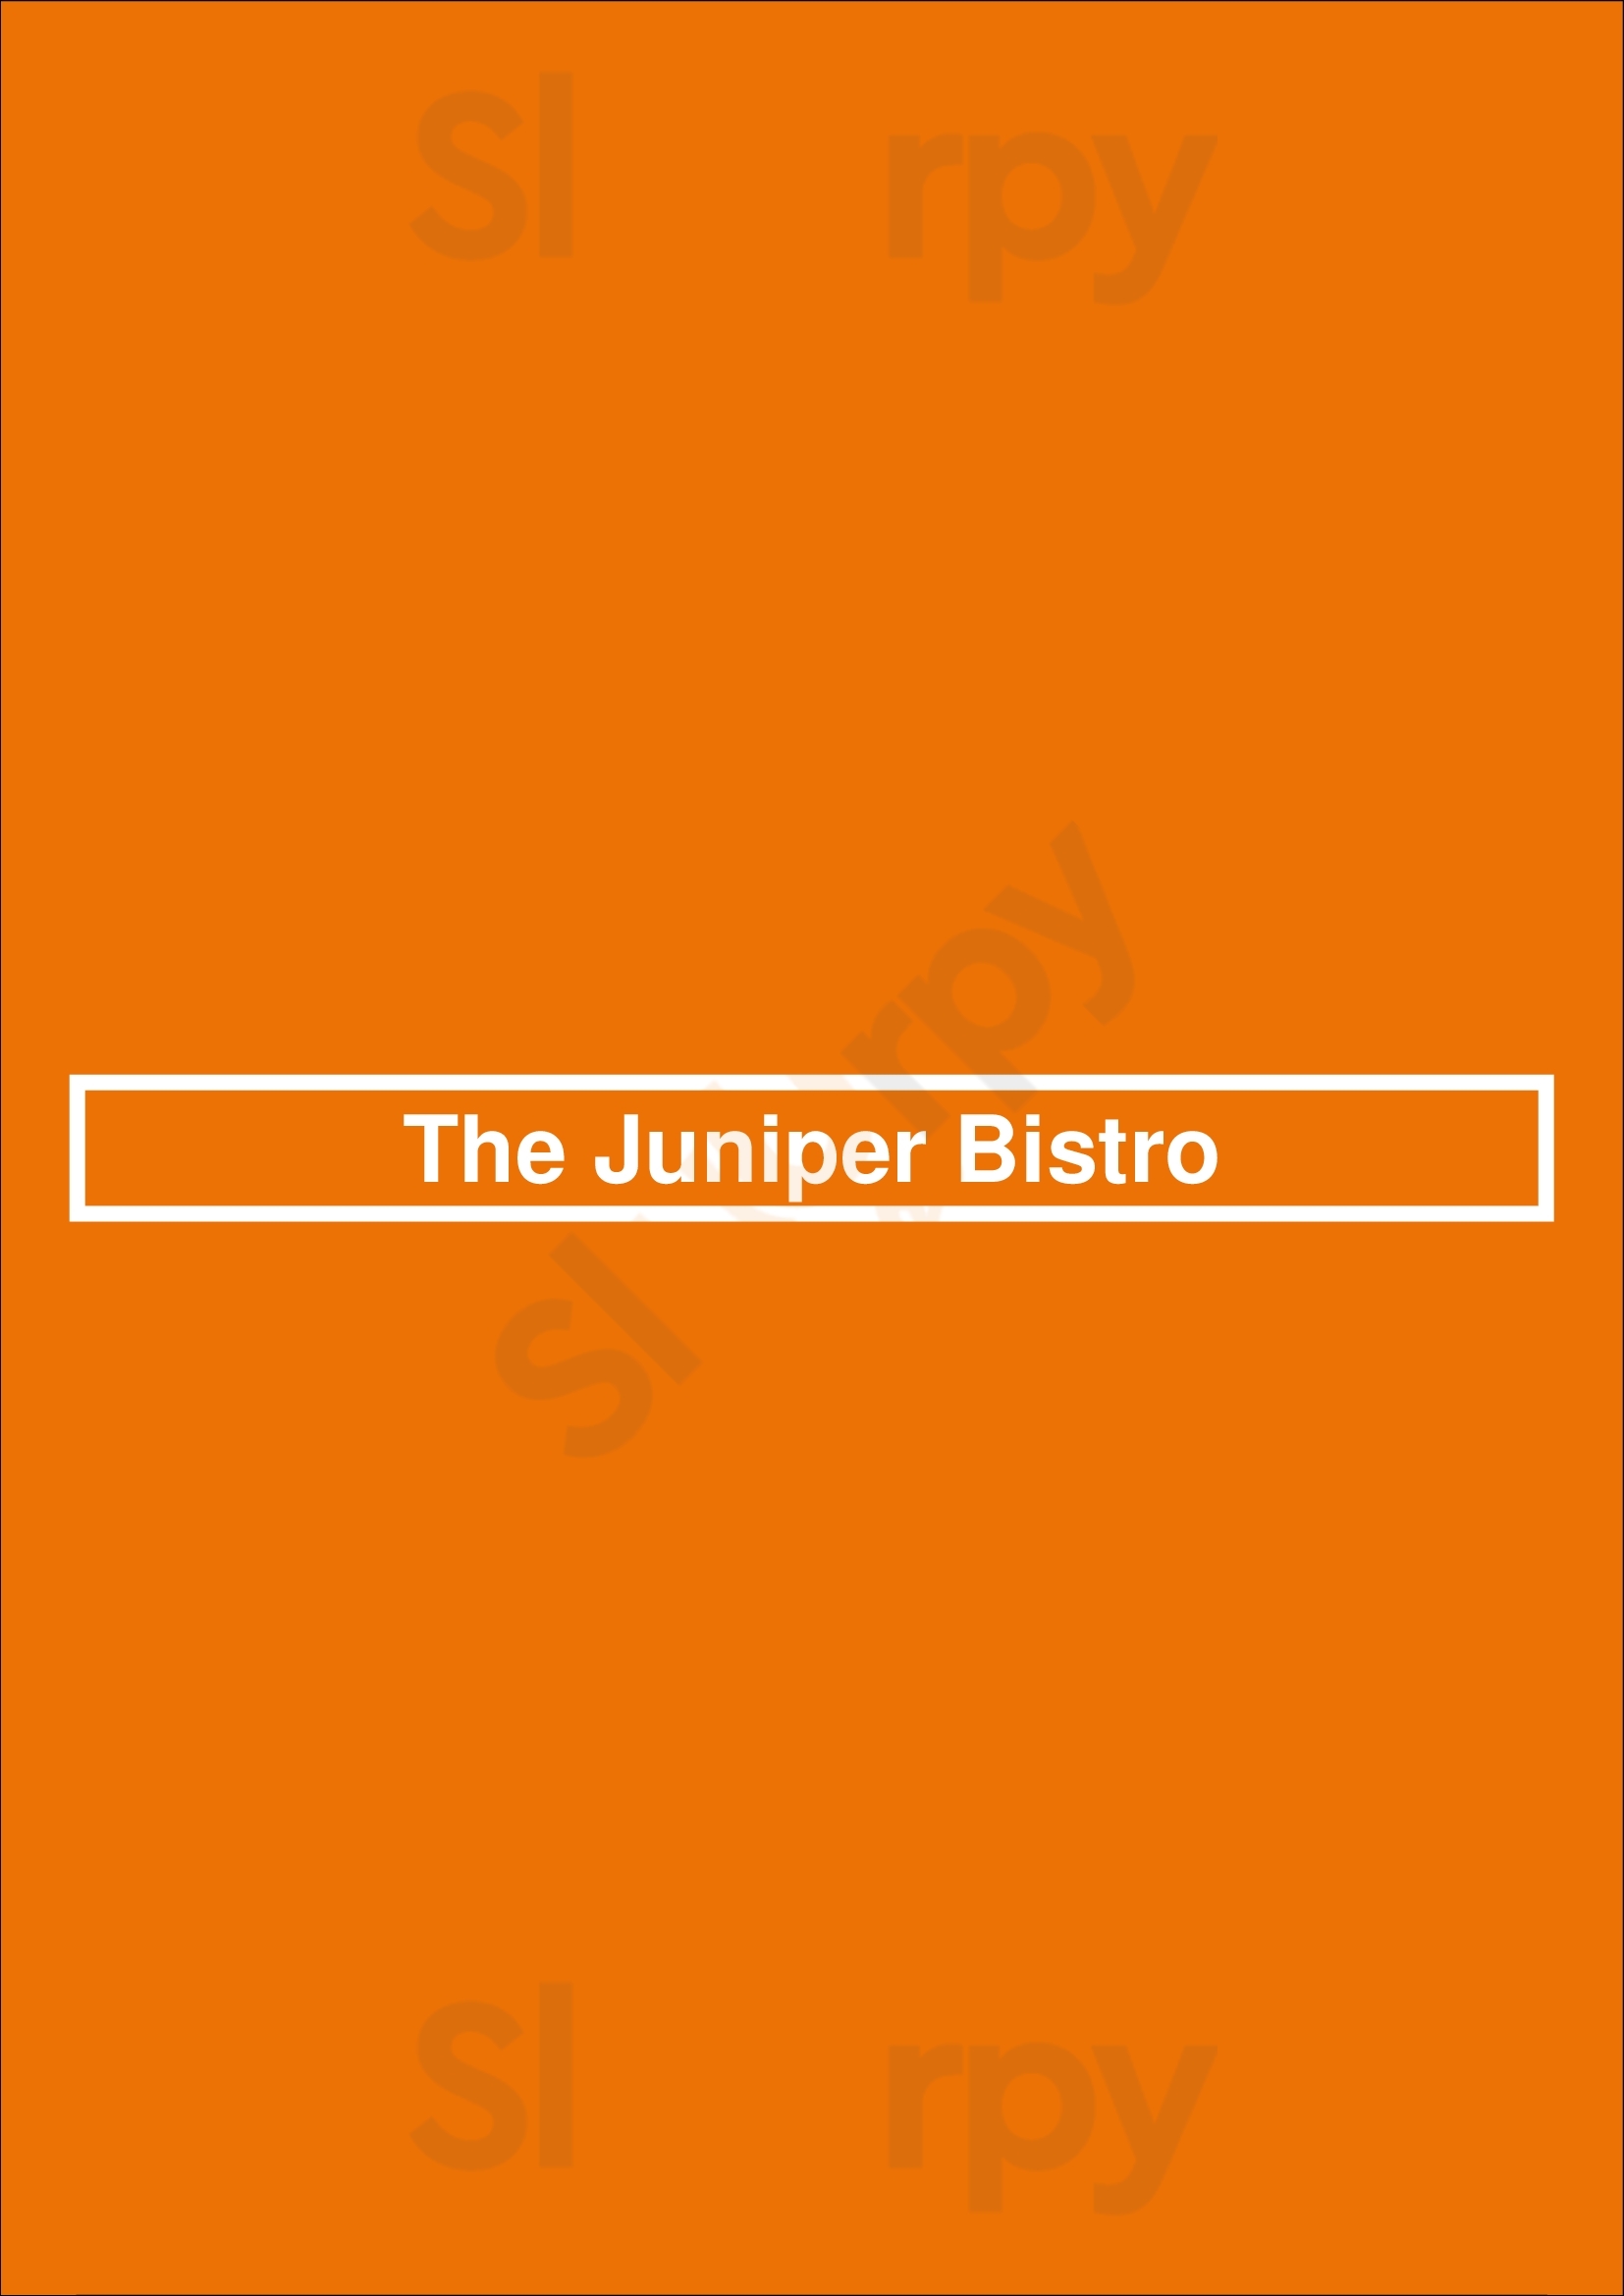 The Juniper Bistro Banff Menu - 1